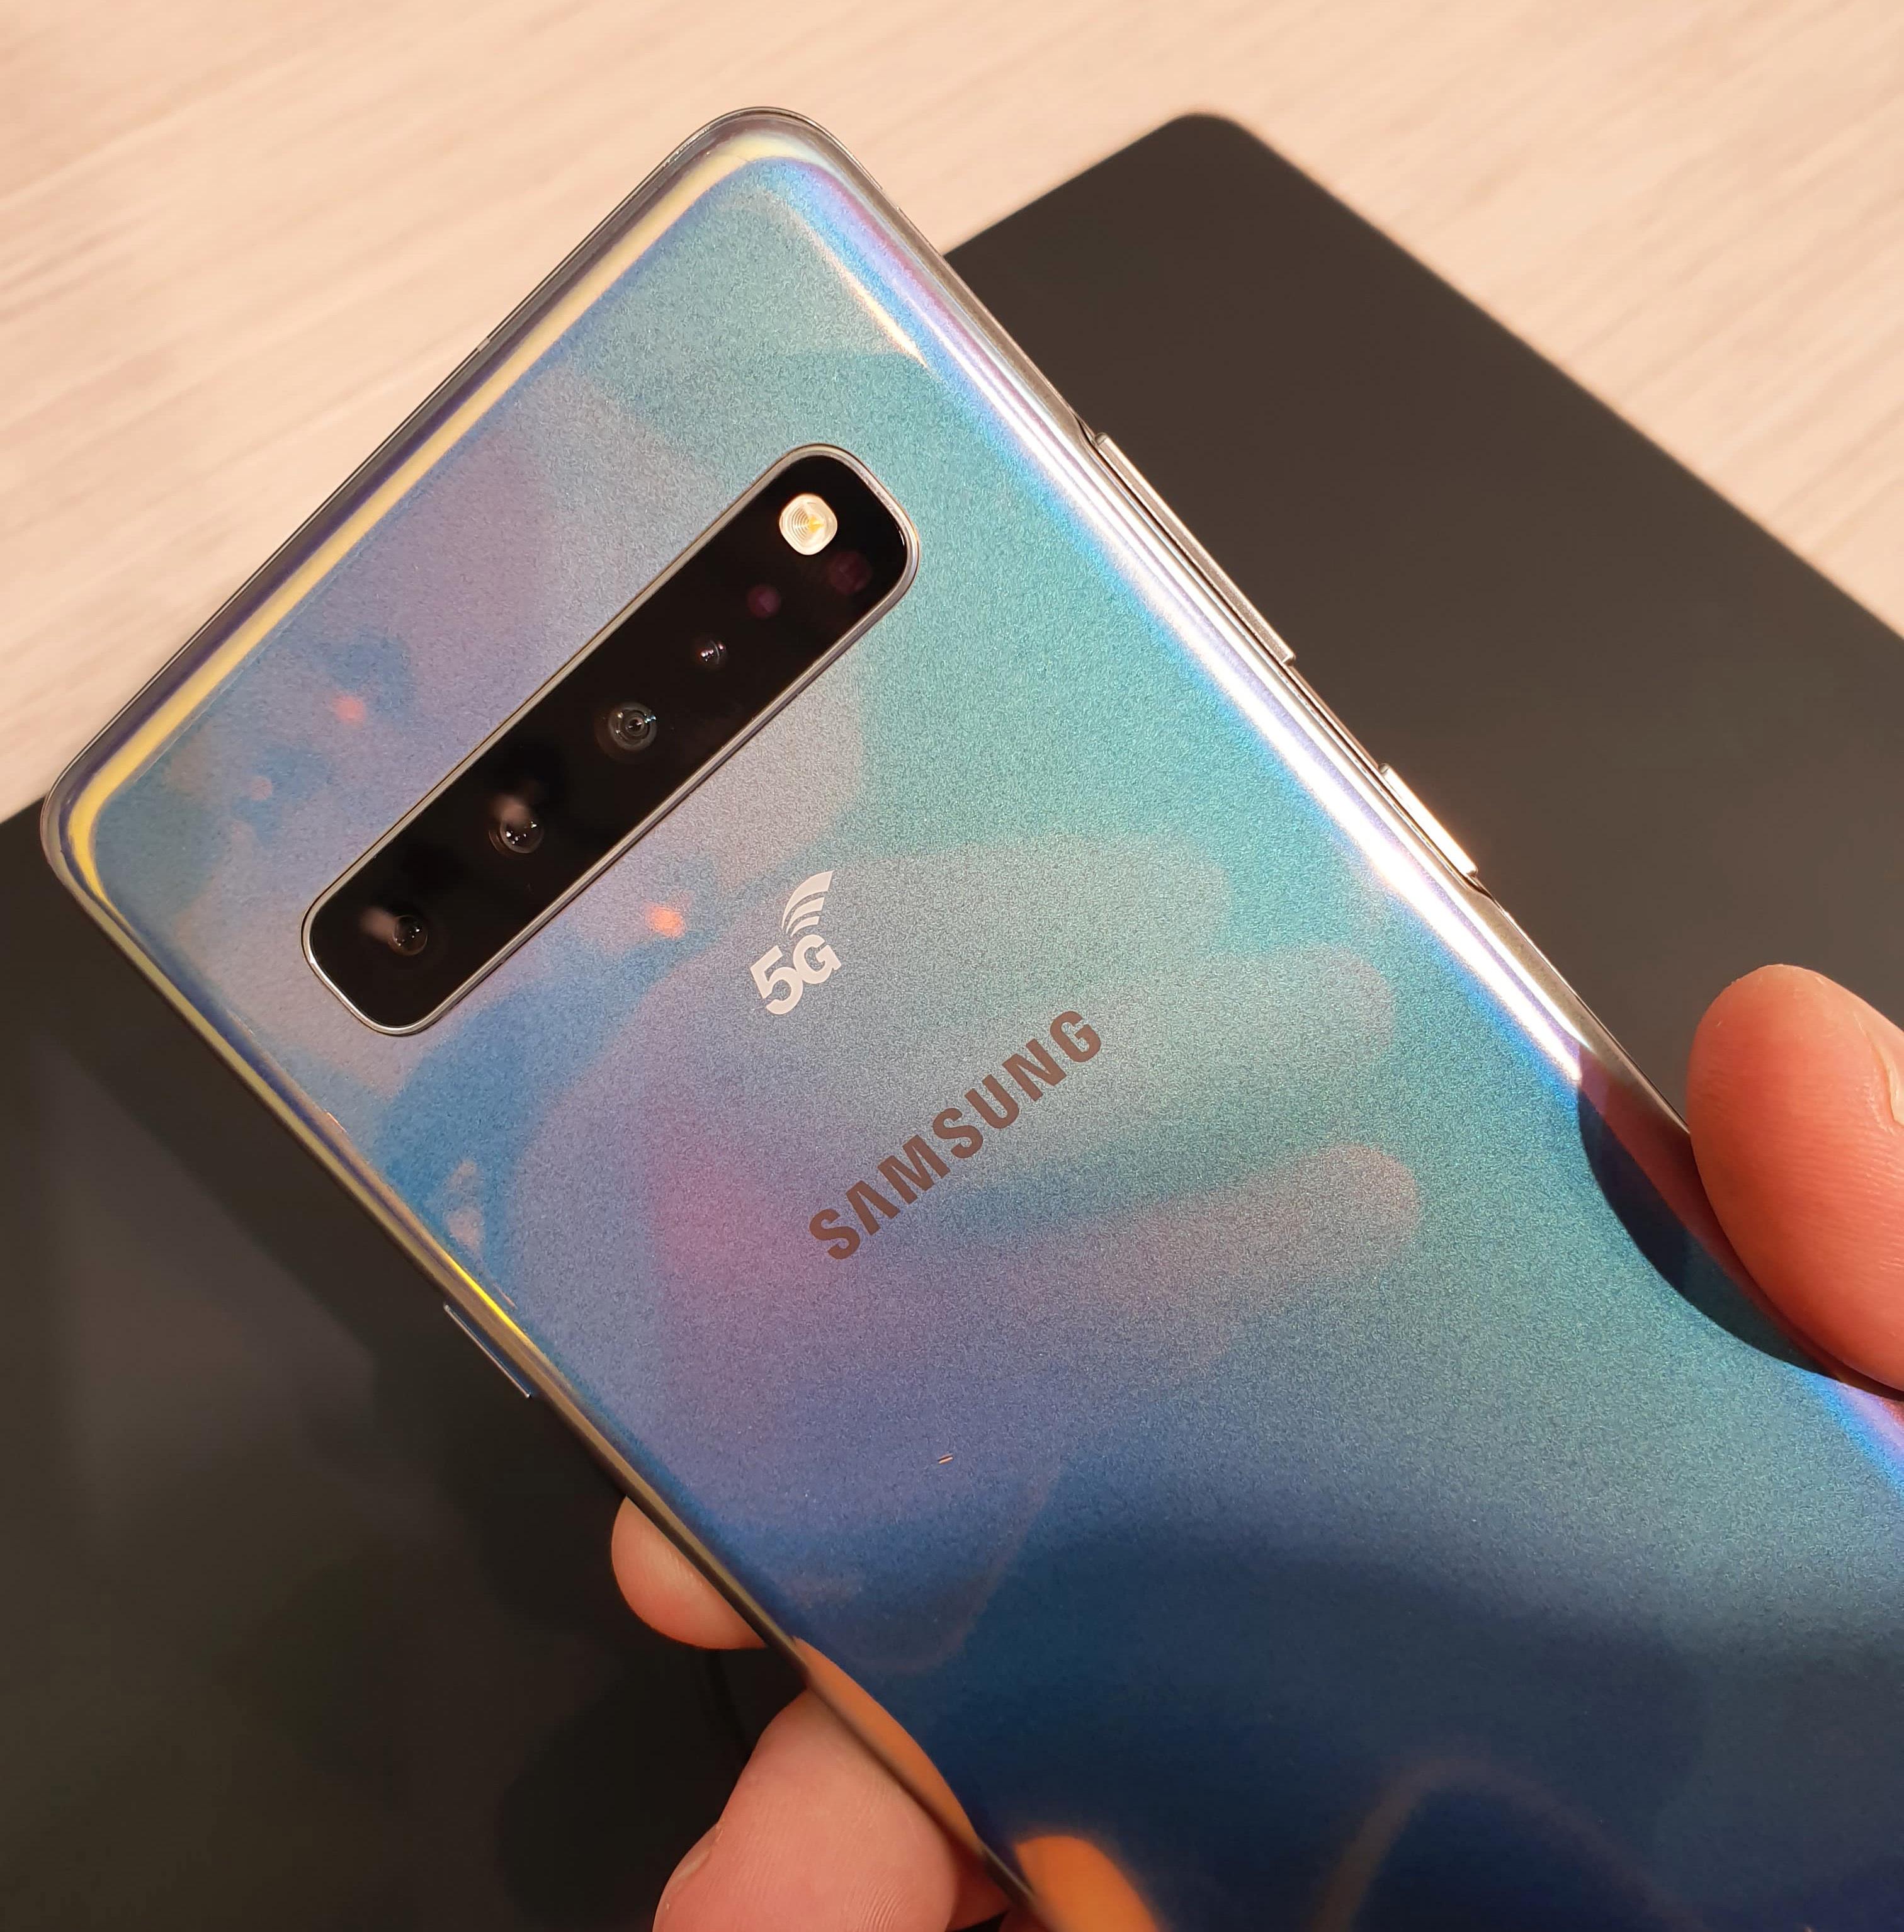 Samsung er én av mange mobilprodusenter som har lansert nye 5G-telefoner de siste dagene. Her er deres Galaxy S10 5G, som er en enda heftigere utgave av den vanlige S10-modellen.